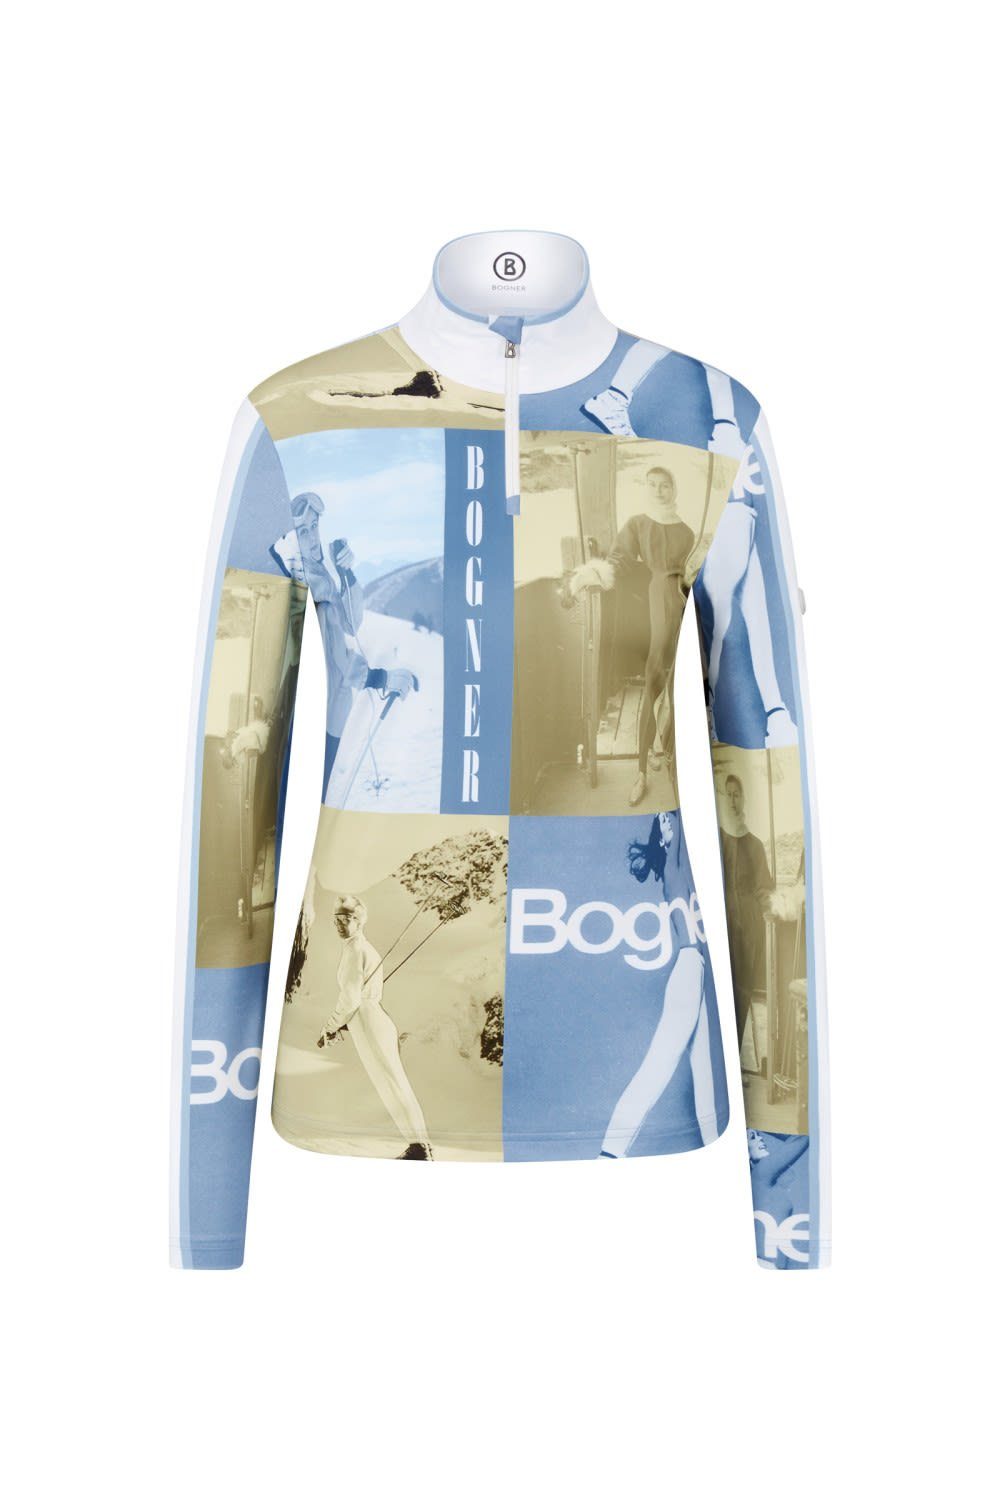 Bogner Multicolor Sport BOGNER Ladies Langarmshirt Damen Langarm-Shirt Beline1 - Blue